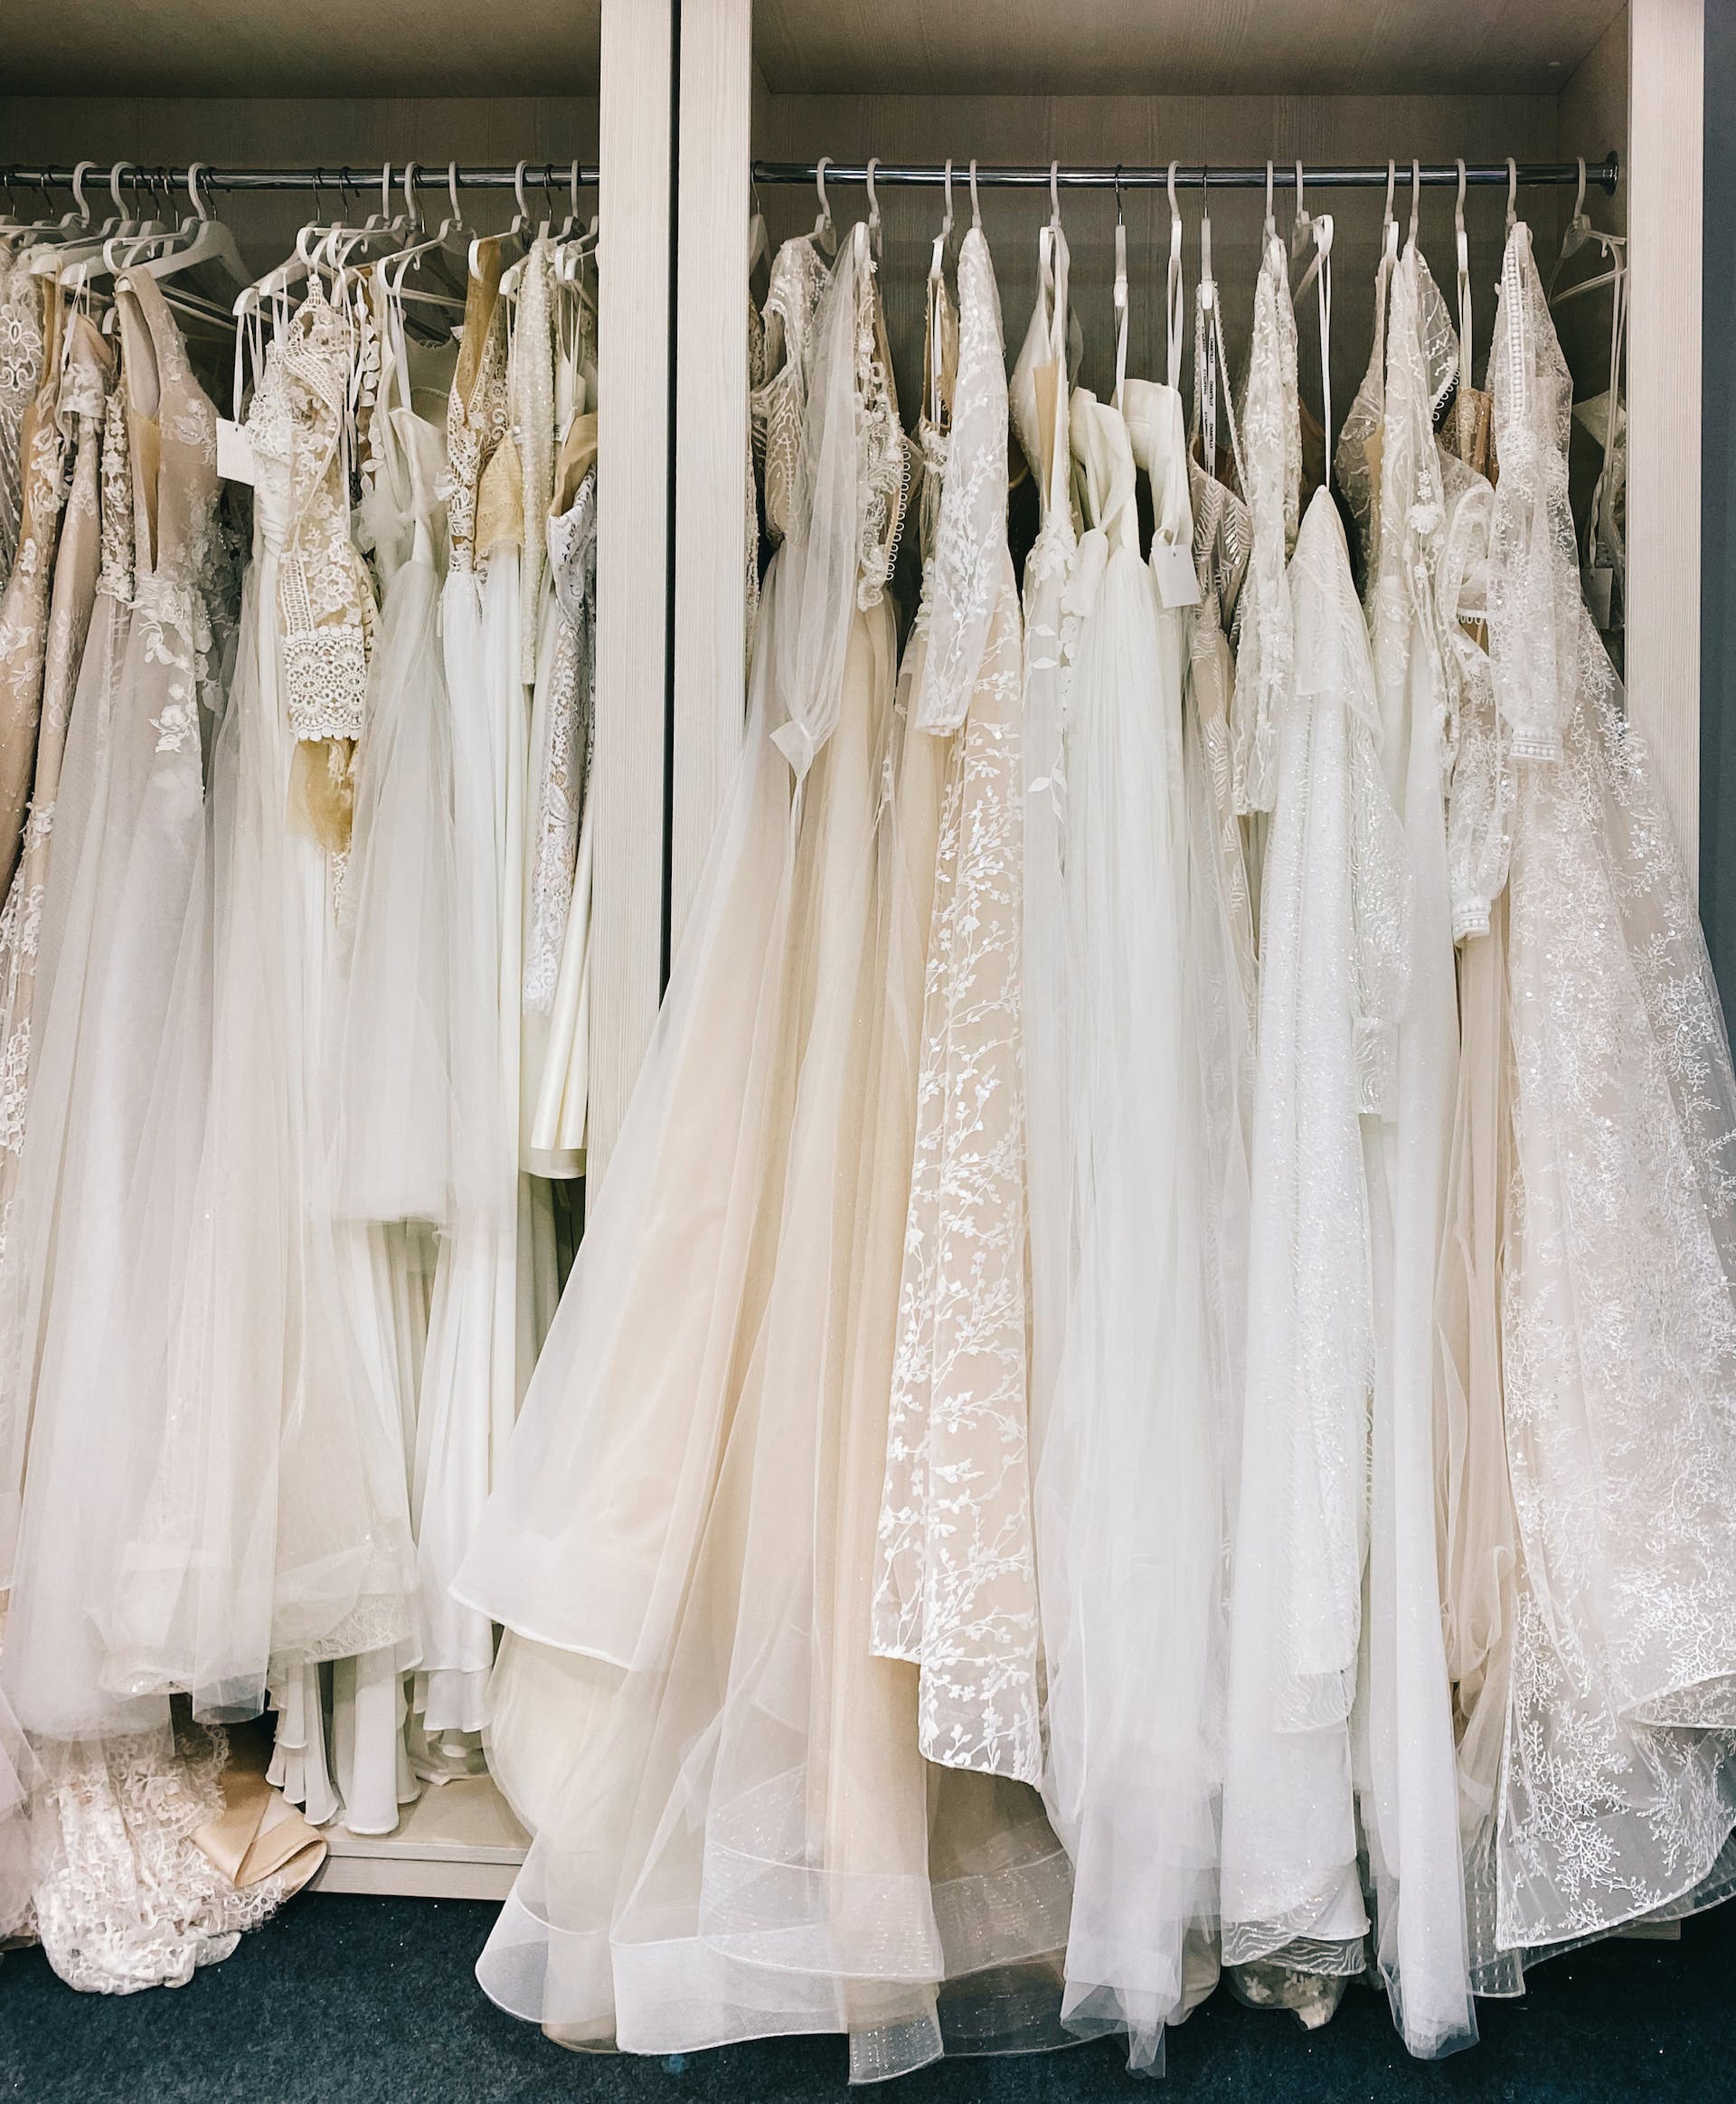 Vestidos de novia colgados en una tienda | Fuente: Pexels